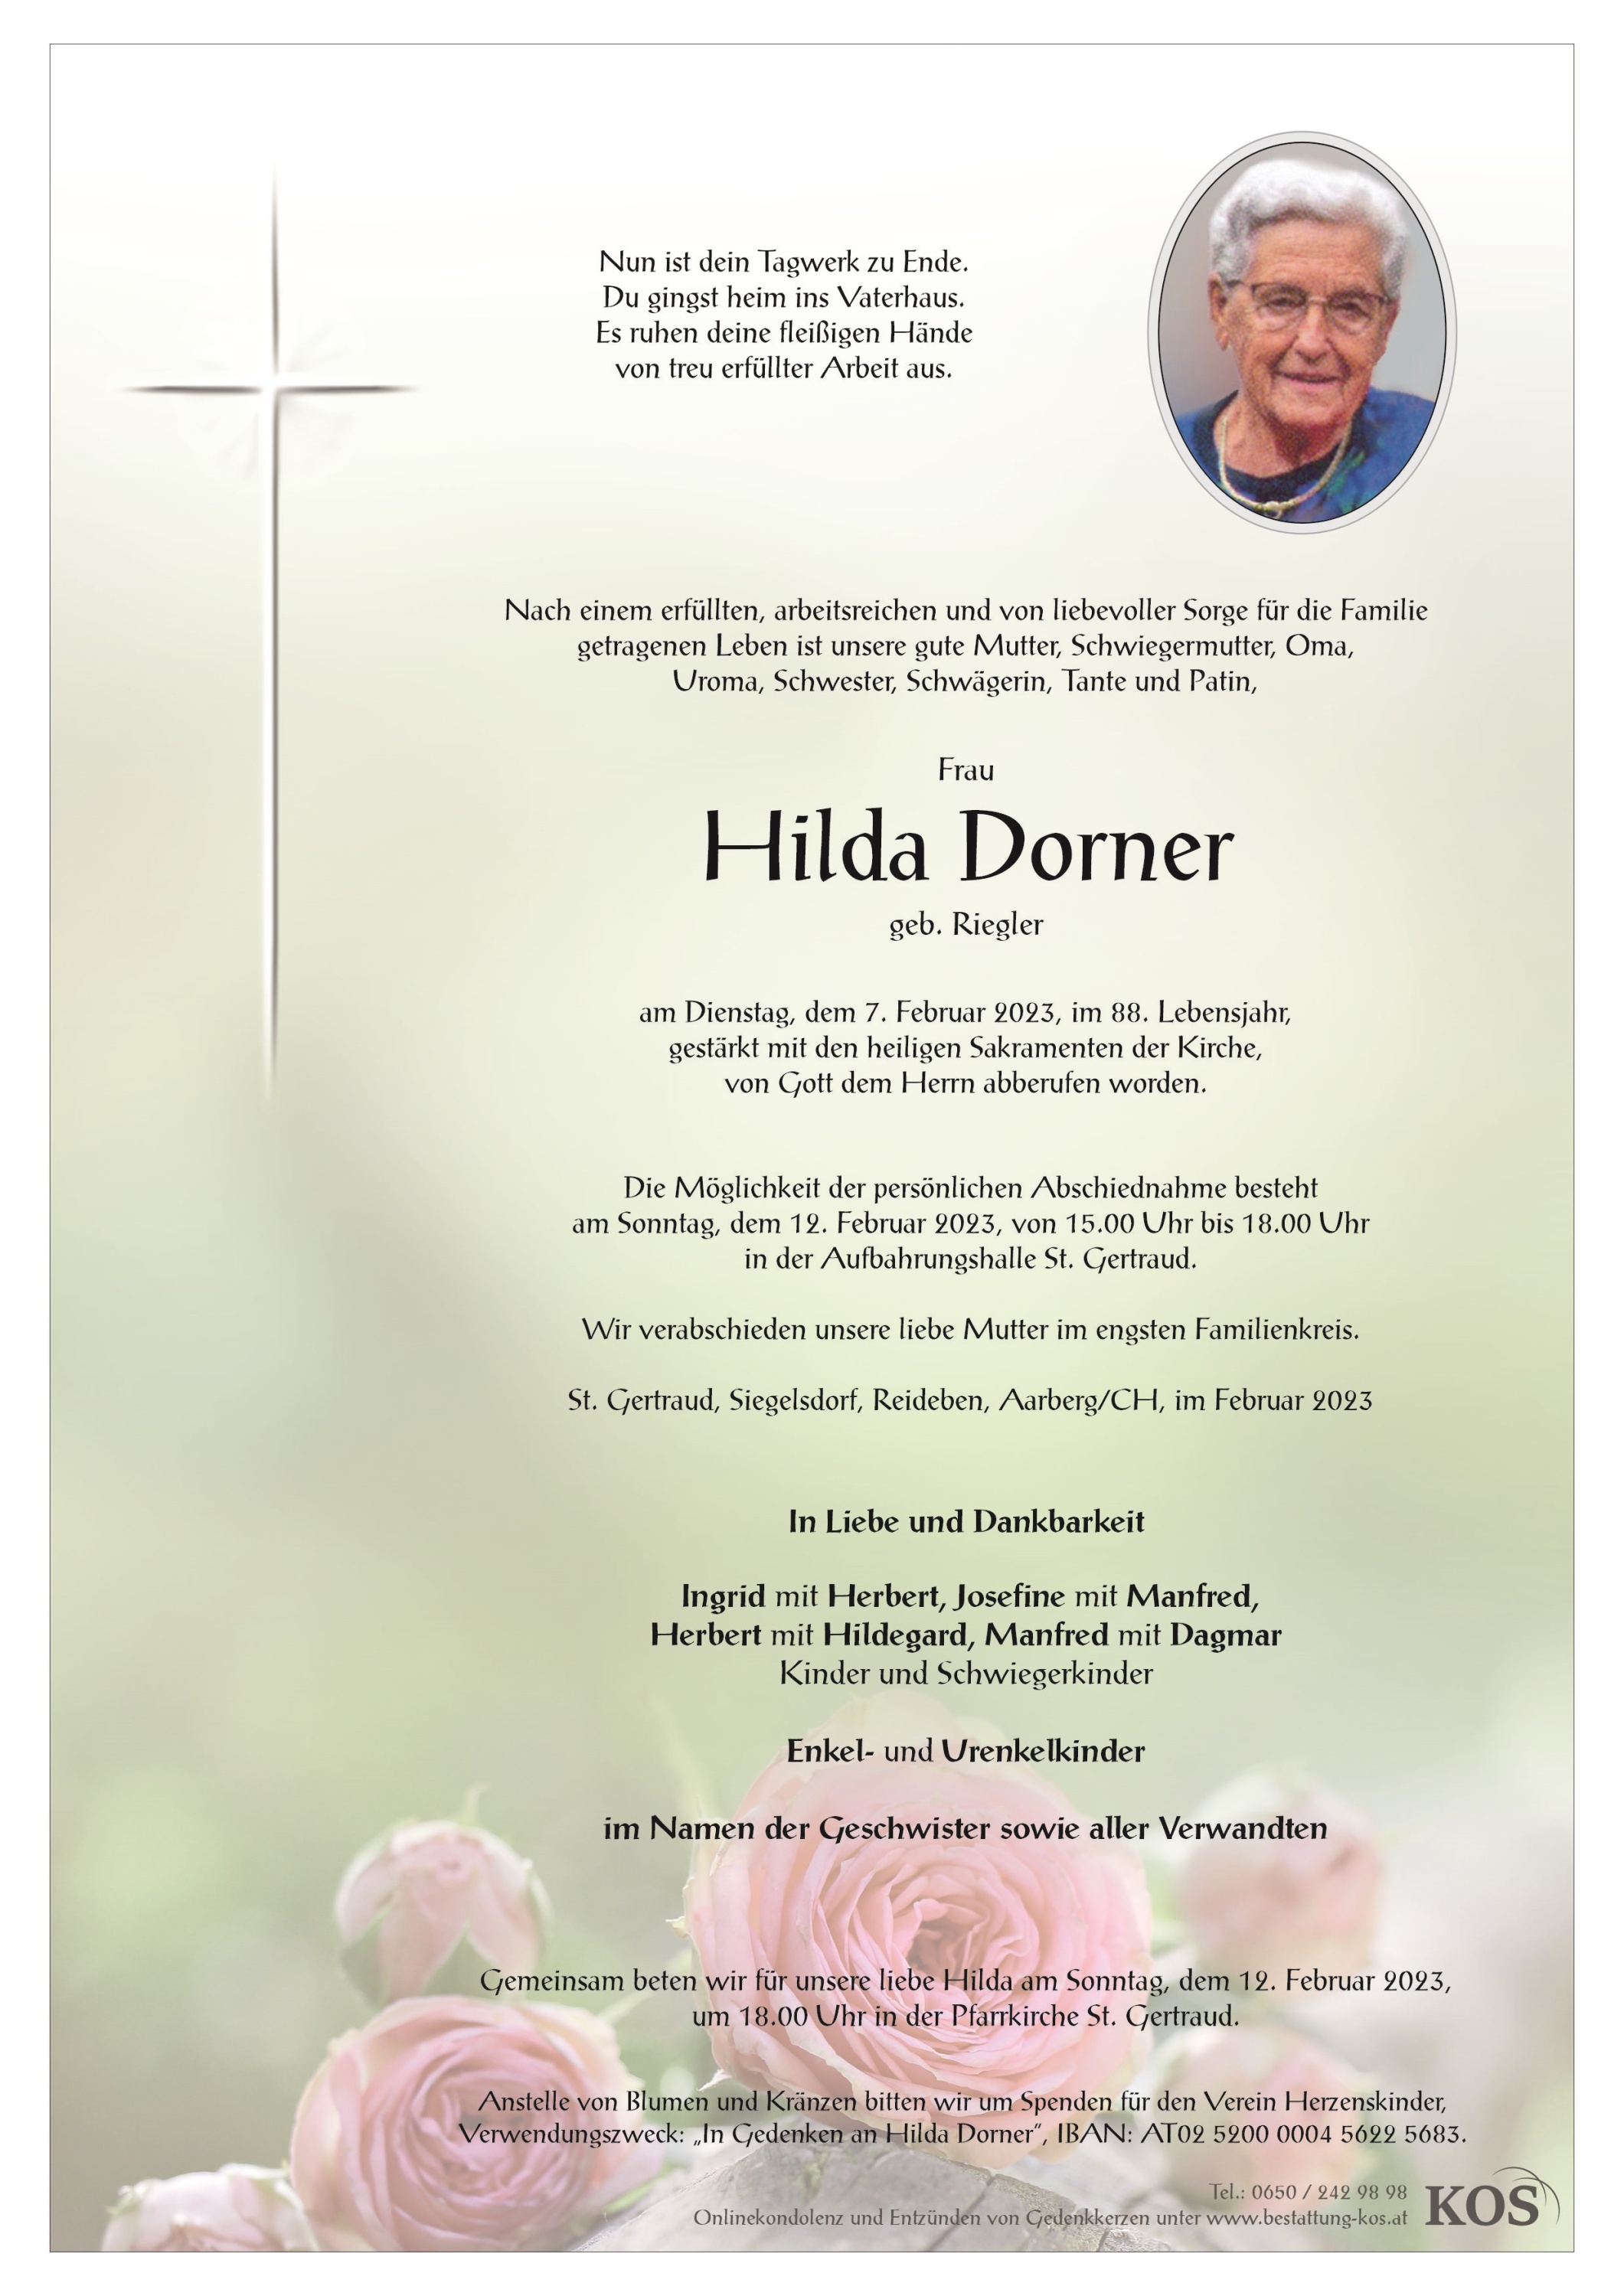 Hilda Dorner